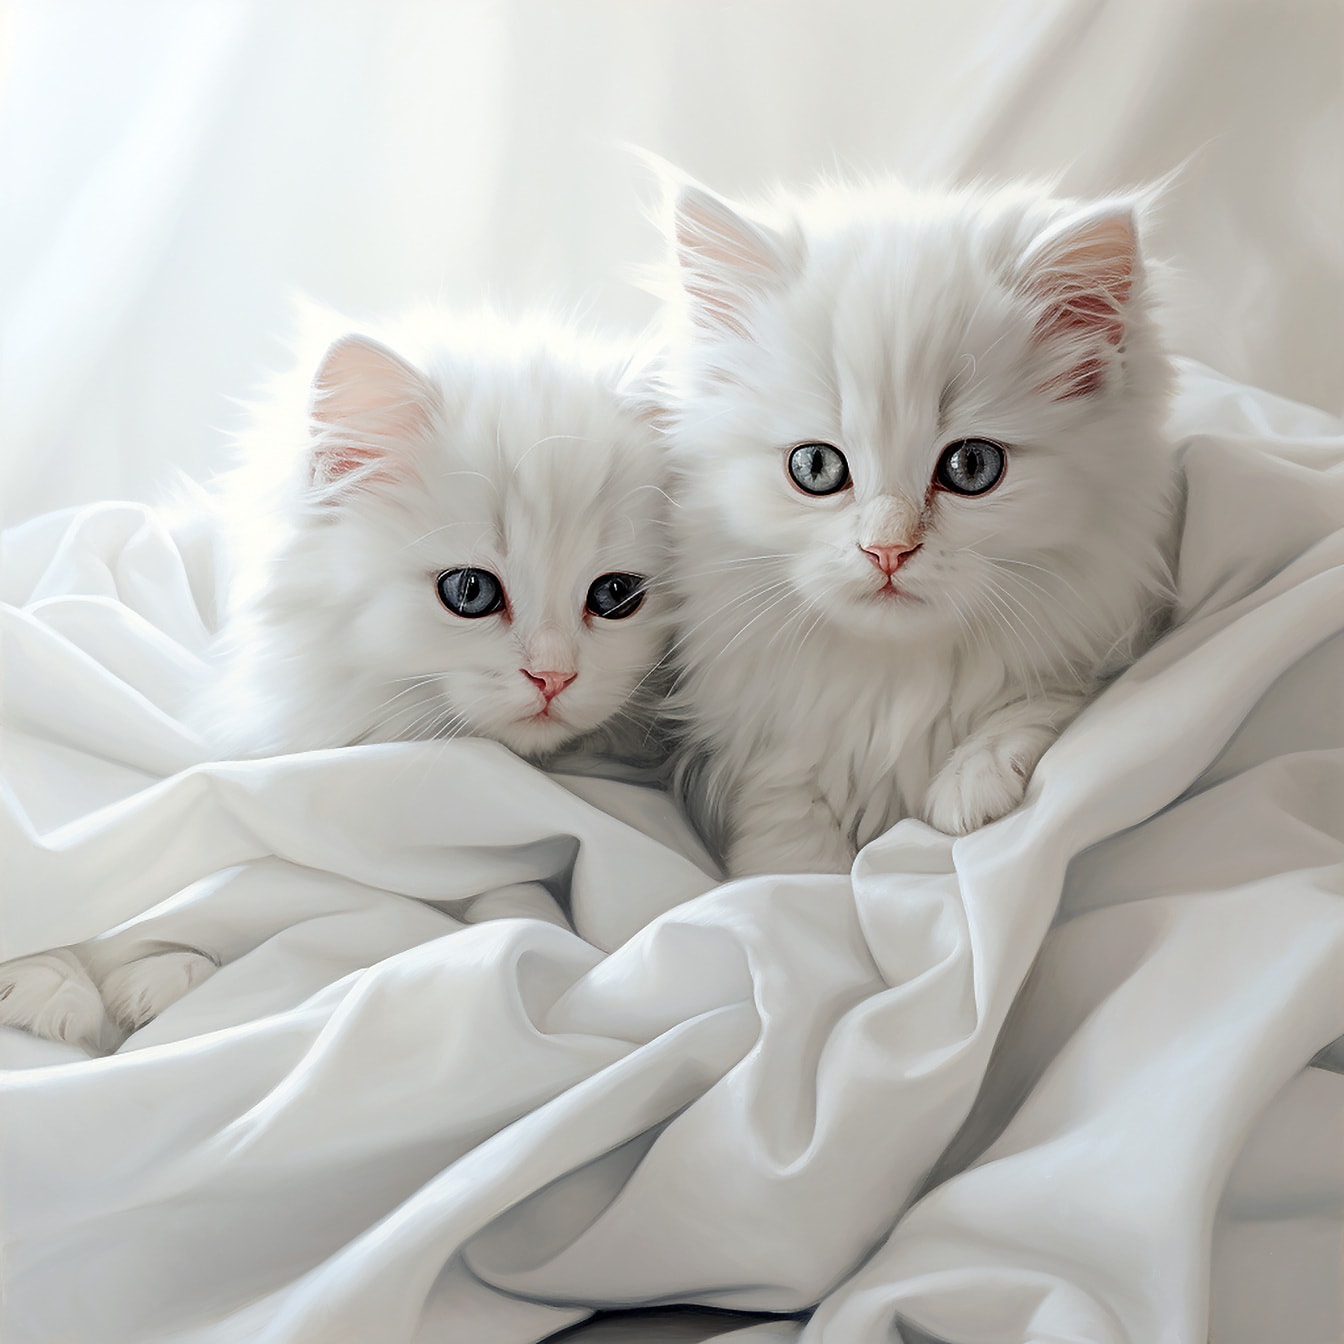 ลูกแมวขนยาวน่ารักในสตูดิโอถ่ายภาพผ้าไหมผ้าใบสีขาว